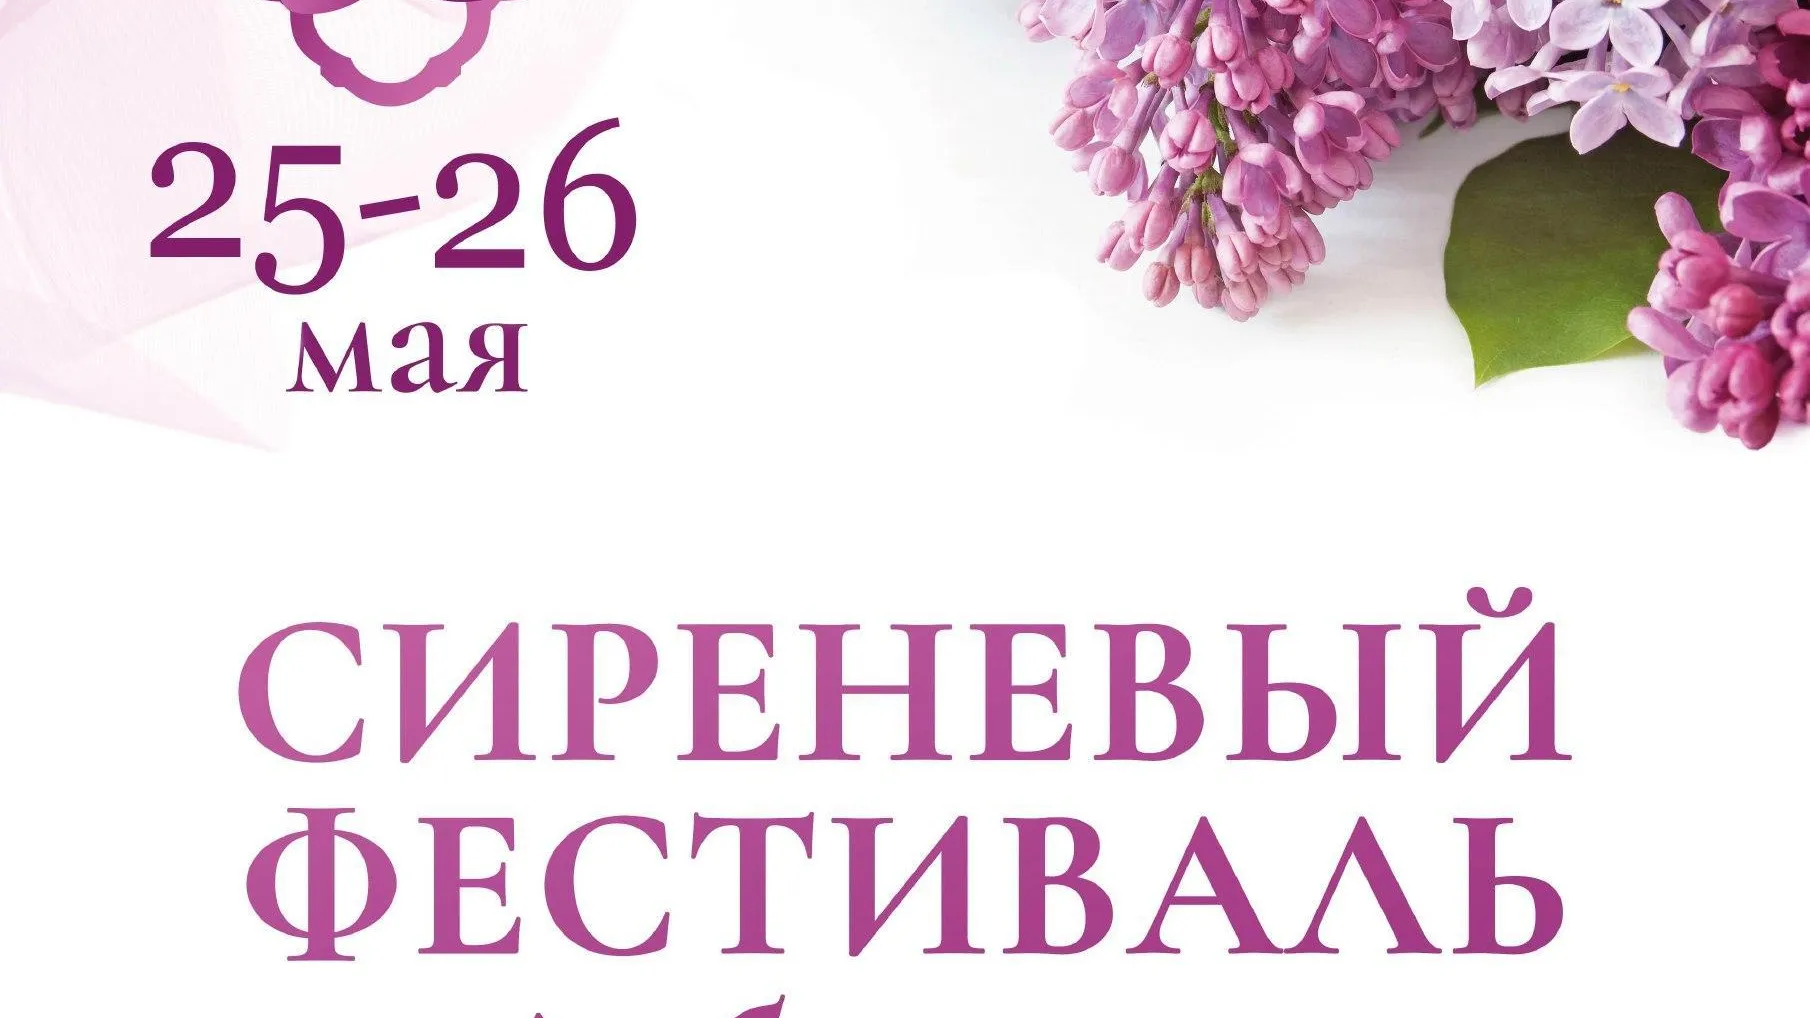 VI сиреневый фестиваль состоится 25 мая в поселке Дубровицы Подольска